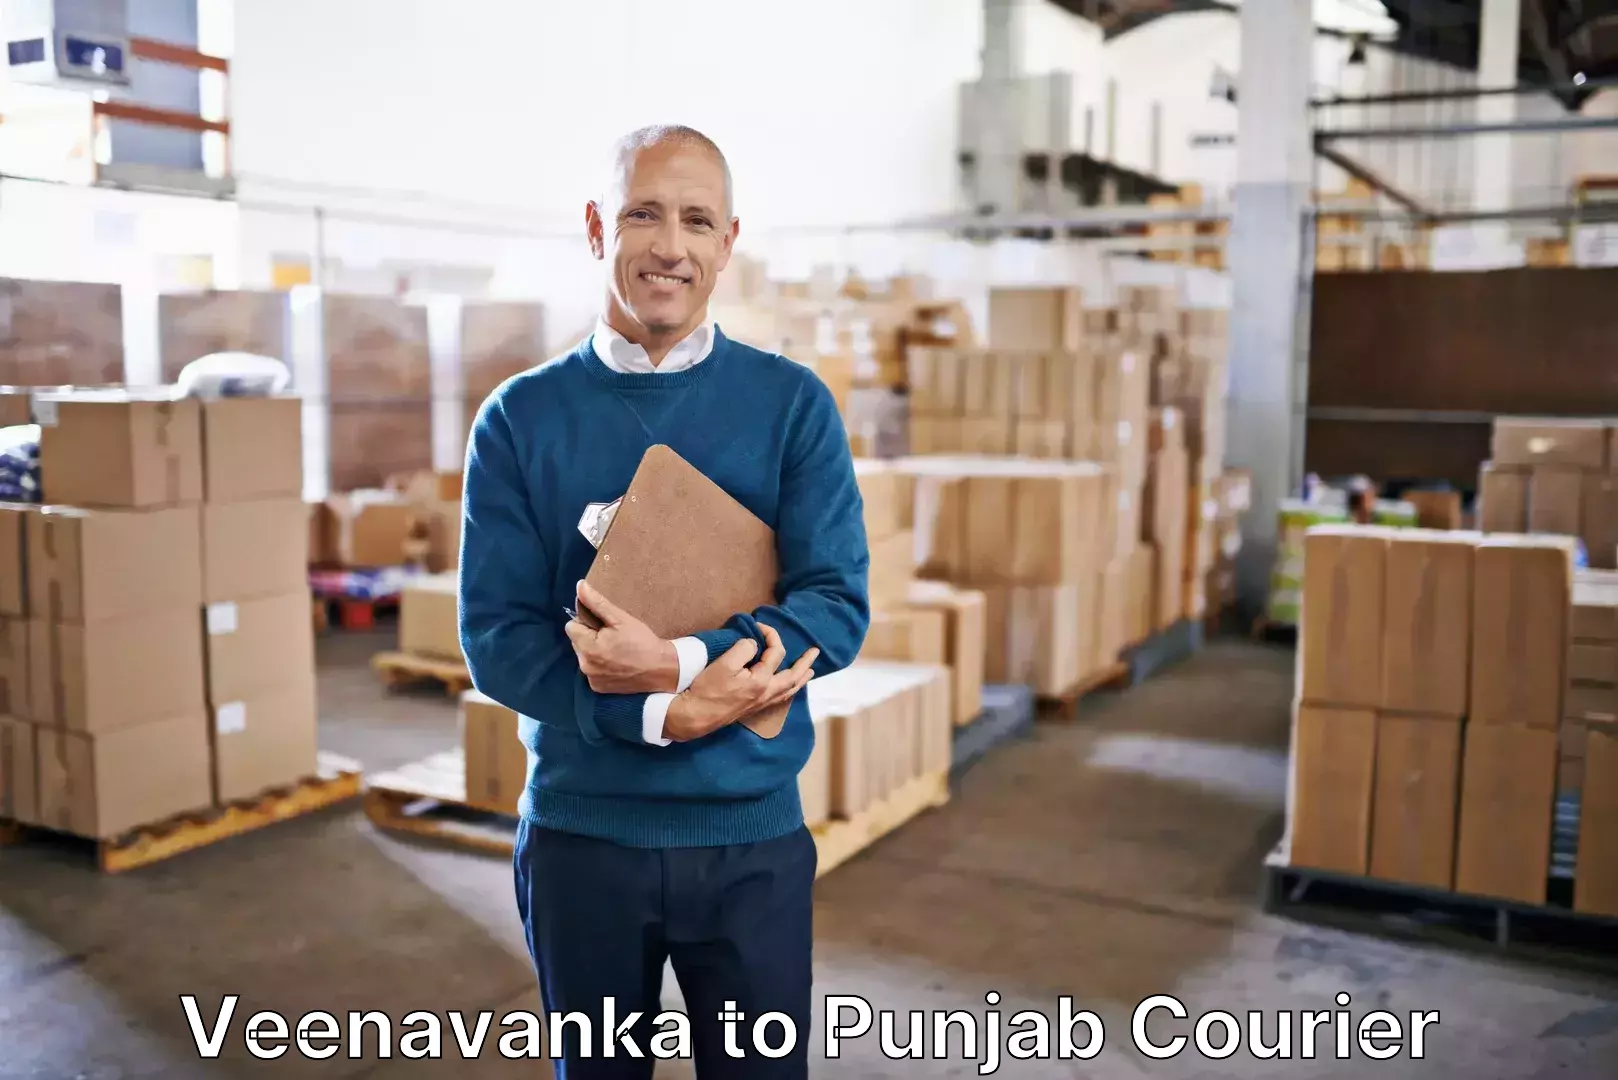 Luggage delivery solutions Veenavanka to Anandpur Sahib